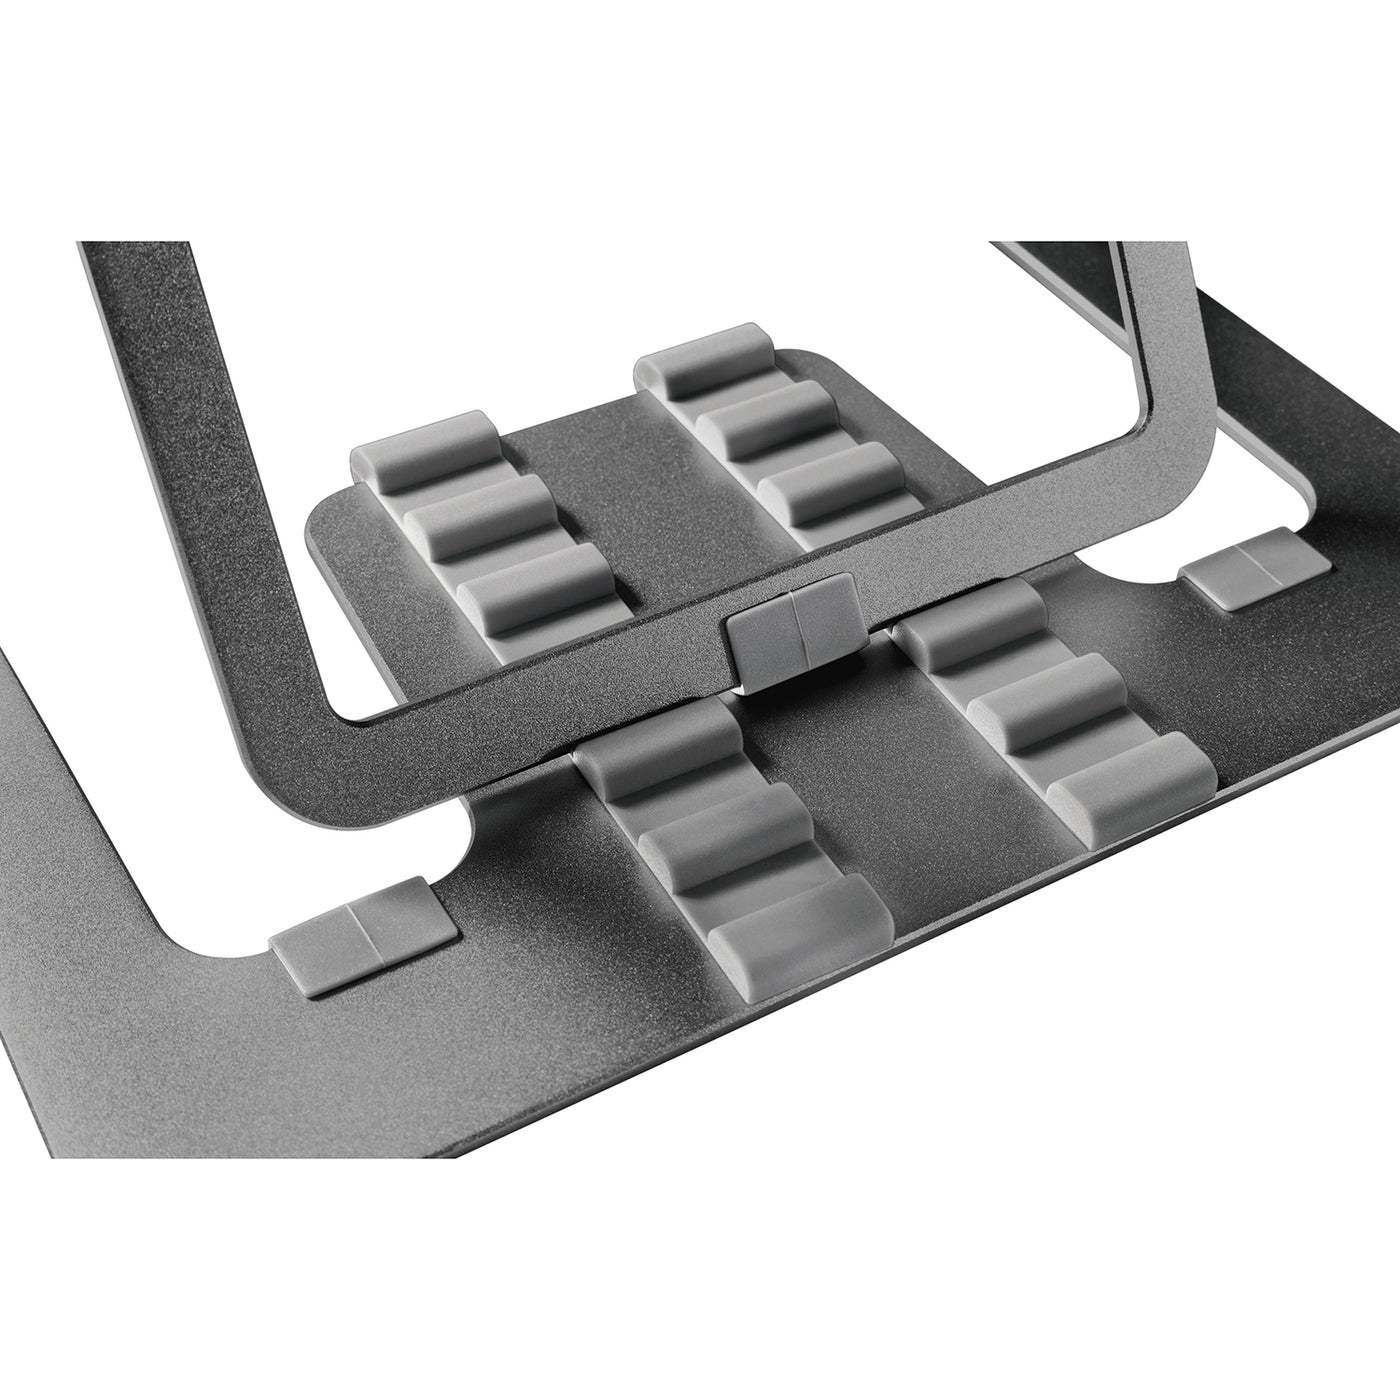 Ultraschlanker, faltbarer Laptopständer aus Aluminium ERGOOFFICE.EU, grau, geeignet für 11-15'' Laptops, ER-416 G